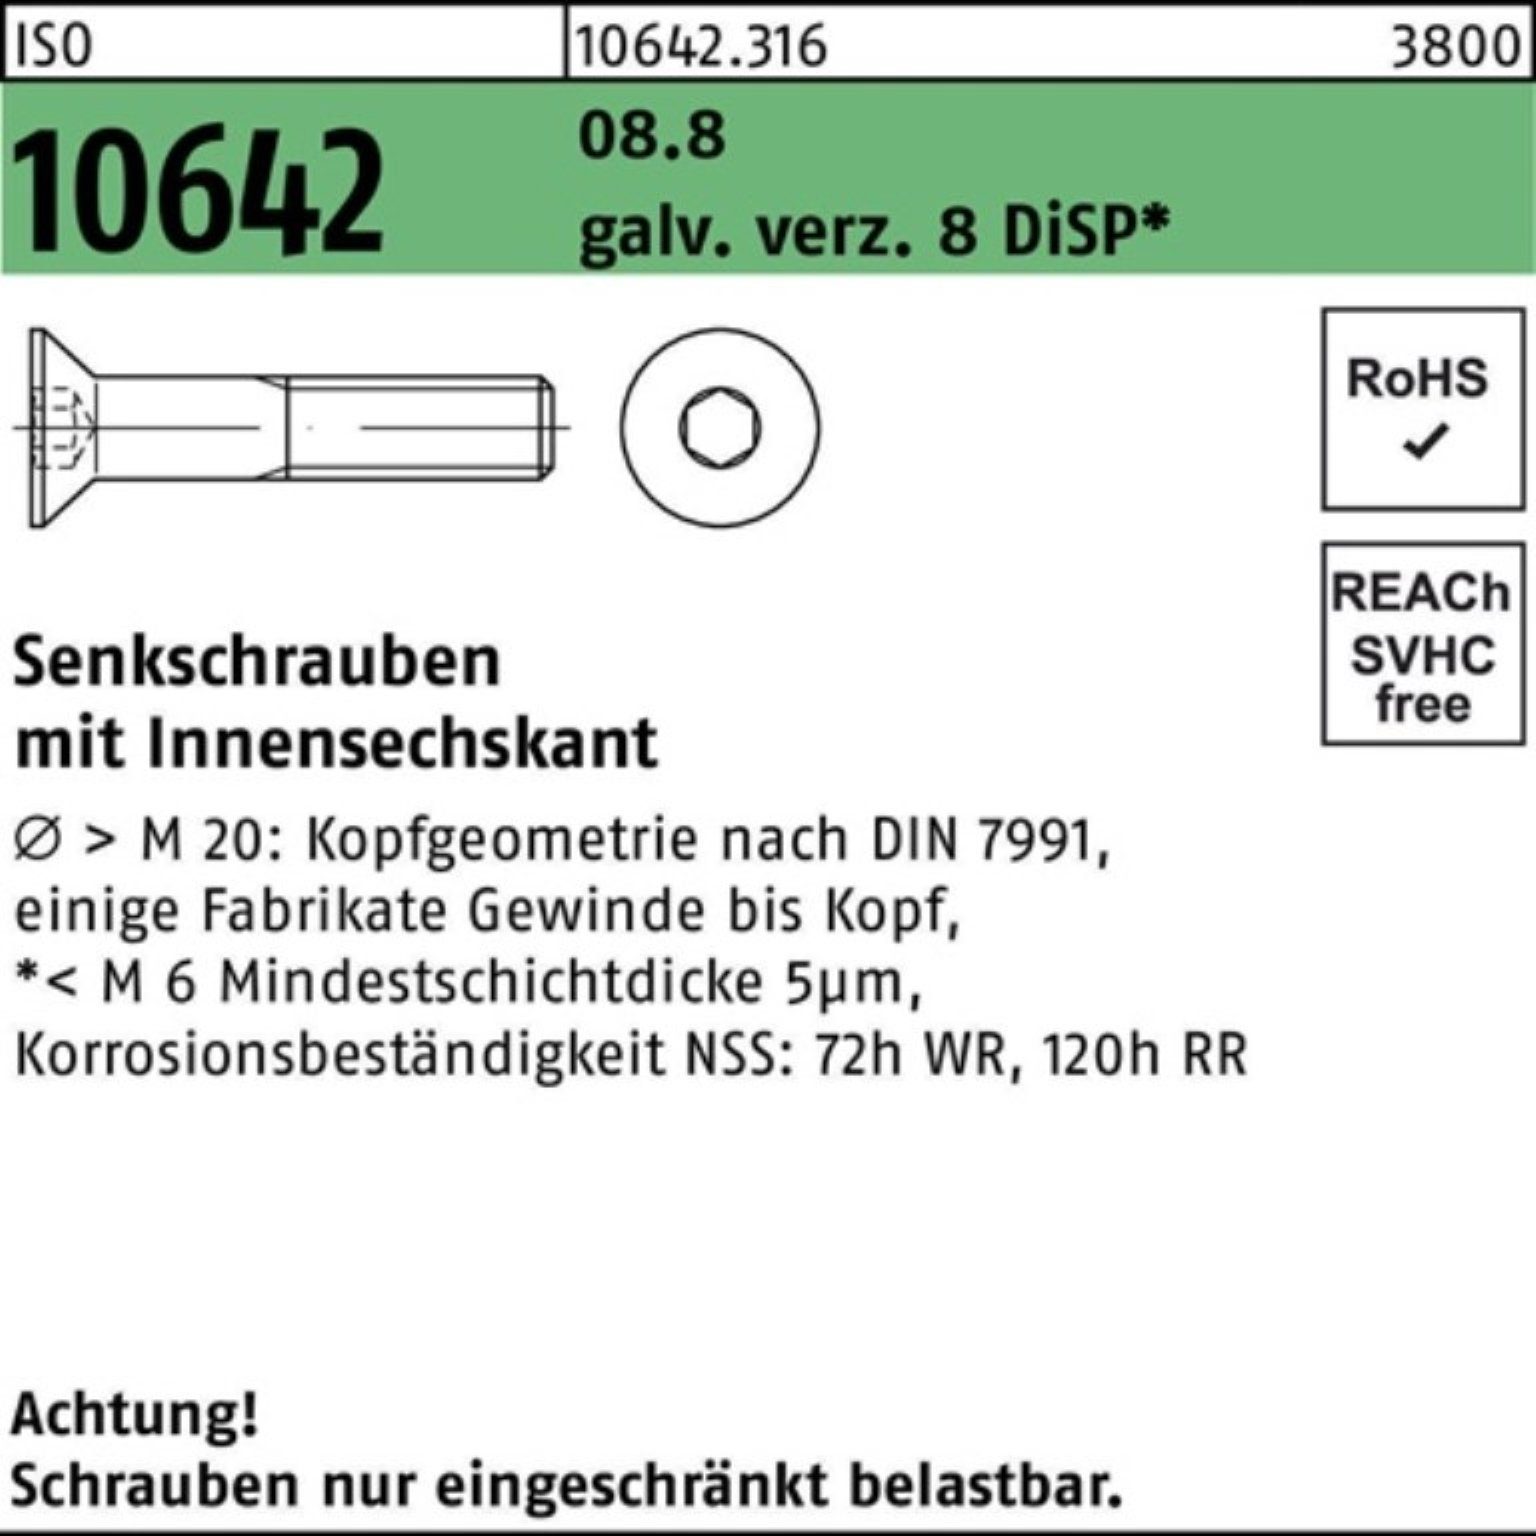 Reyher Senkschraube M8x12 Senkschraube 8.8 Innen-6kt galv.verz. 10642 200er Pack DiS ISO 8